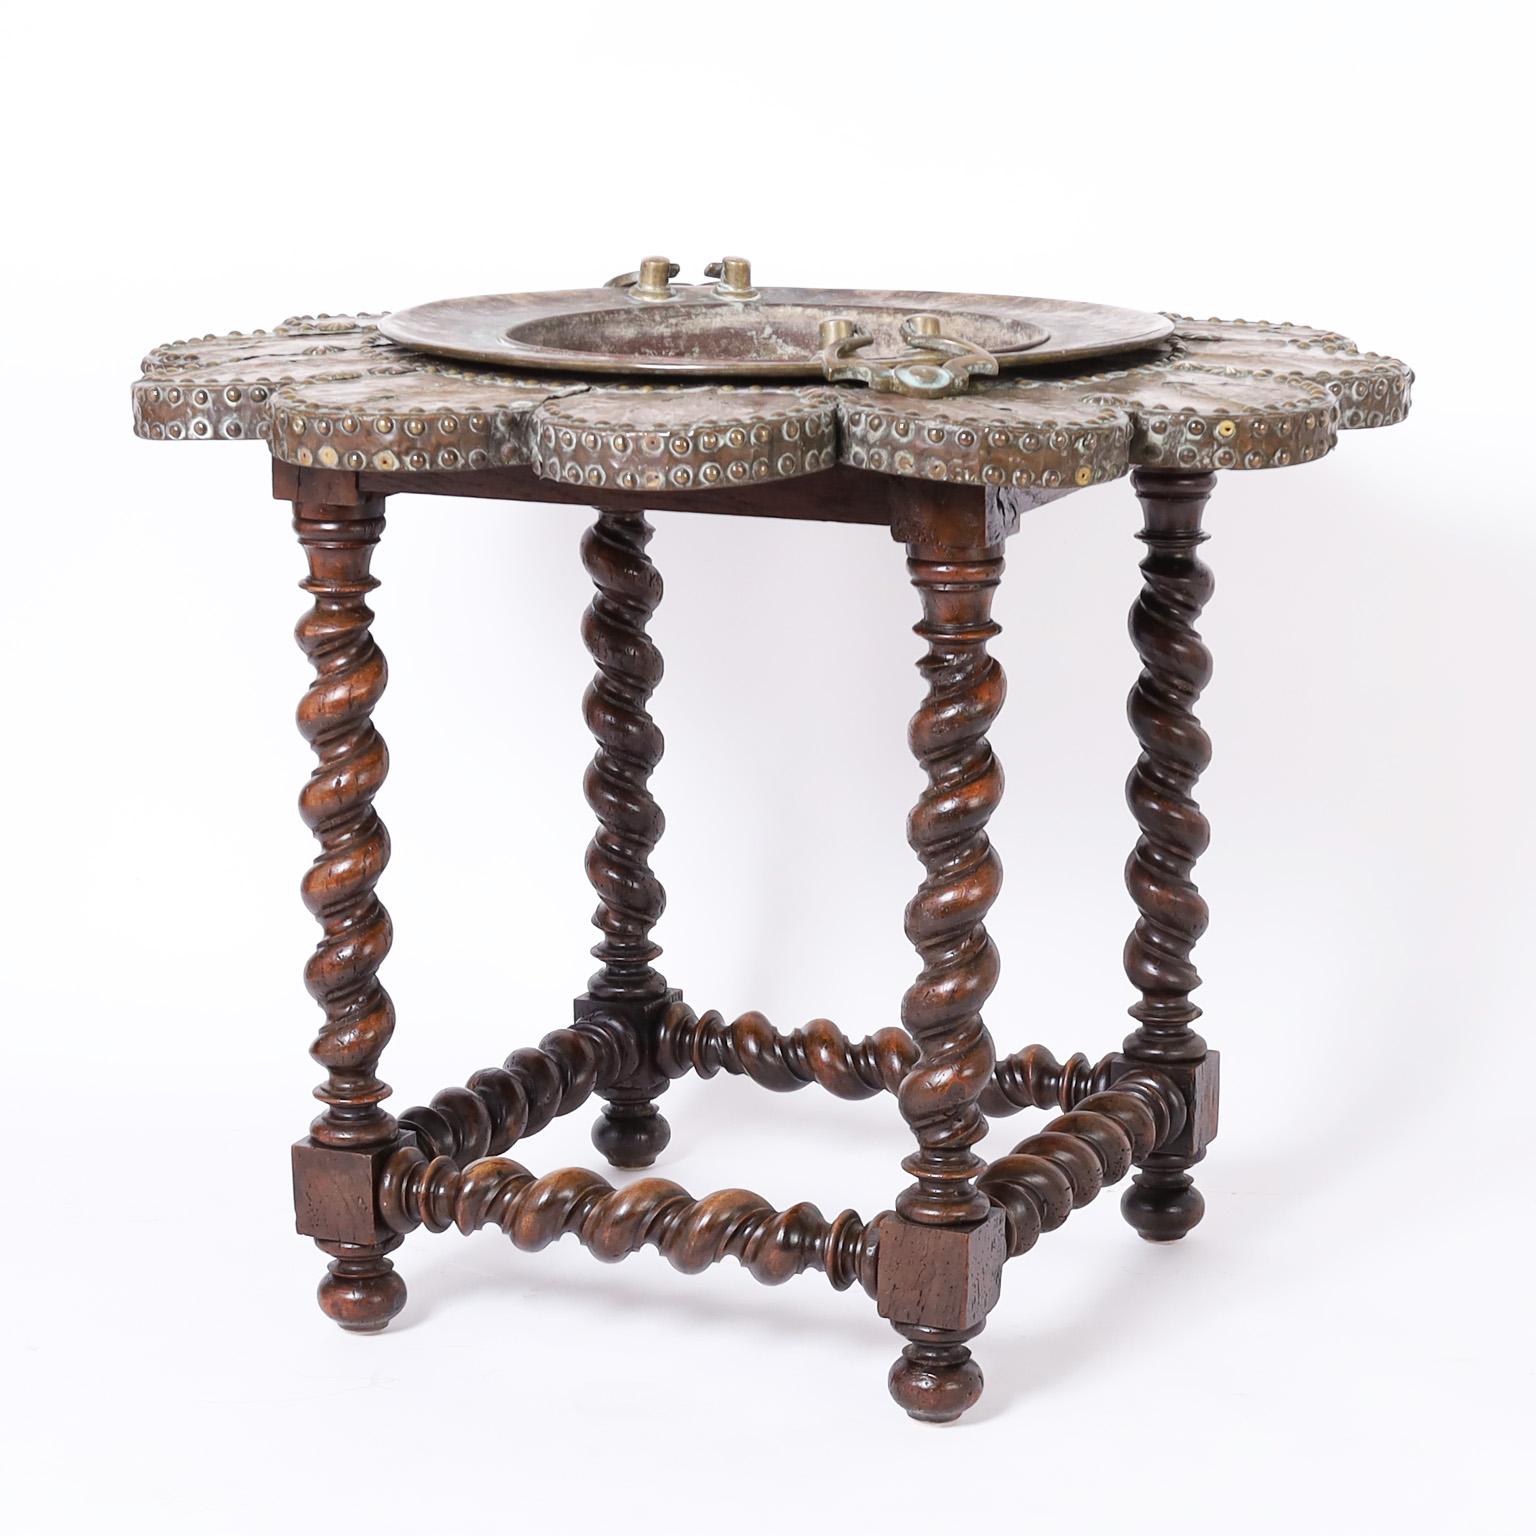 Interessanter englischer Tisch aus dem 19. Jahrhundert mit einem handgefertigten Kupferkessel, umgeben von messingbeschlagenen Pedalen mit vielen Gebrauchsspuren auf einem geschnitzten und gedrechselten Sockel aus Gerstenholz.